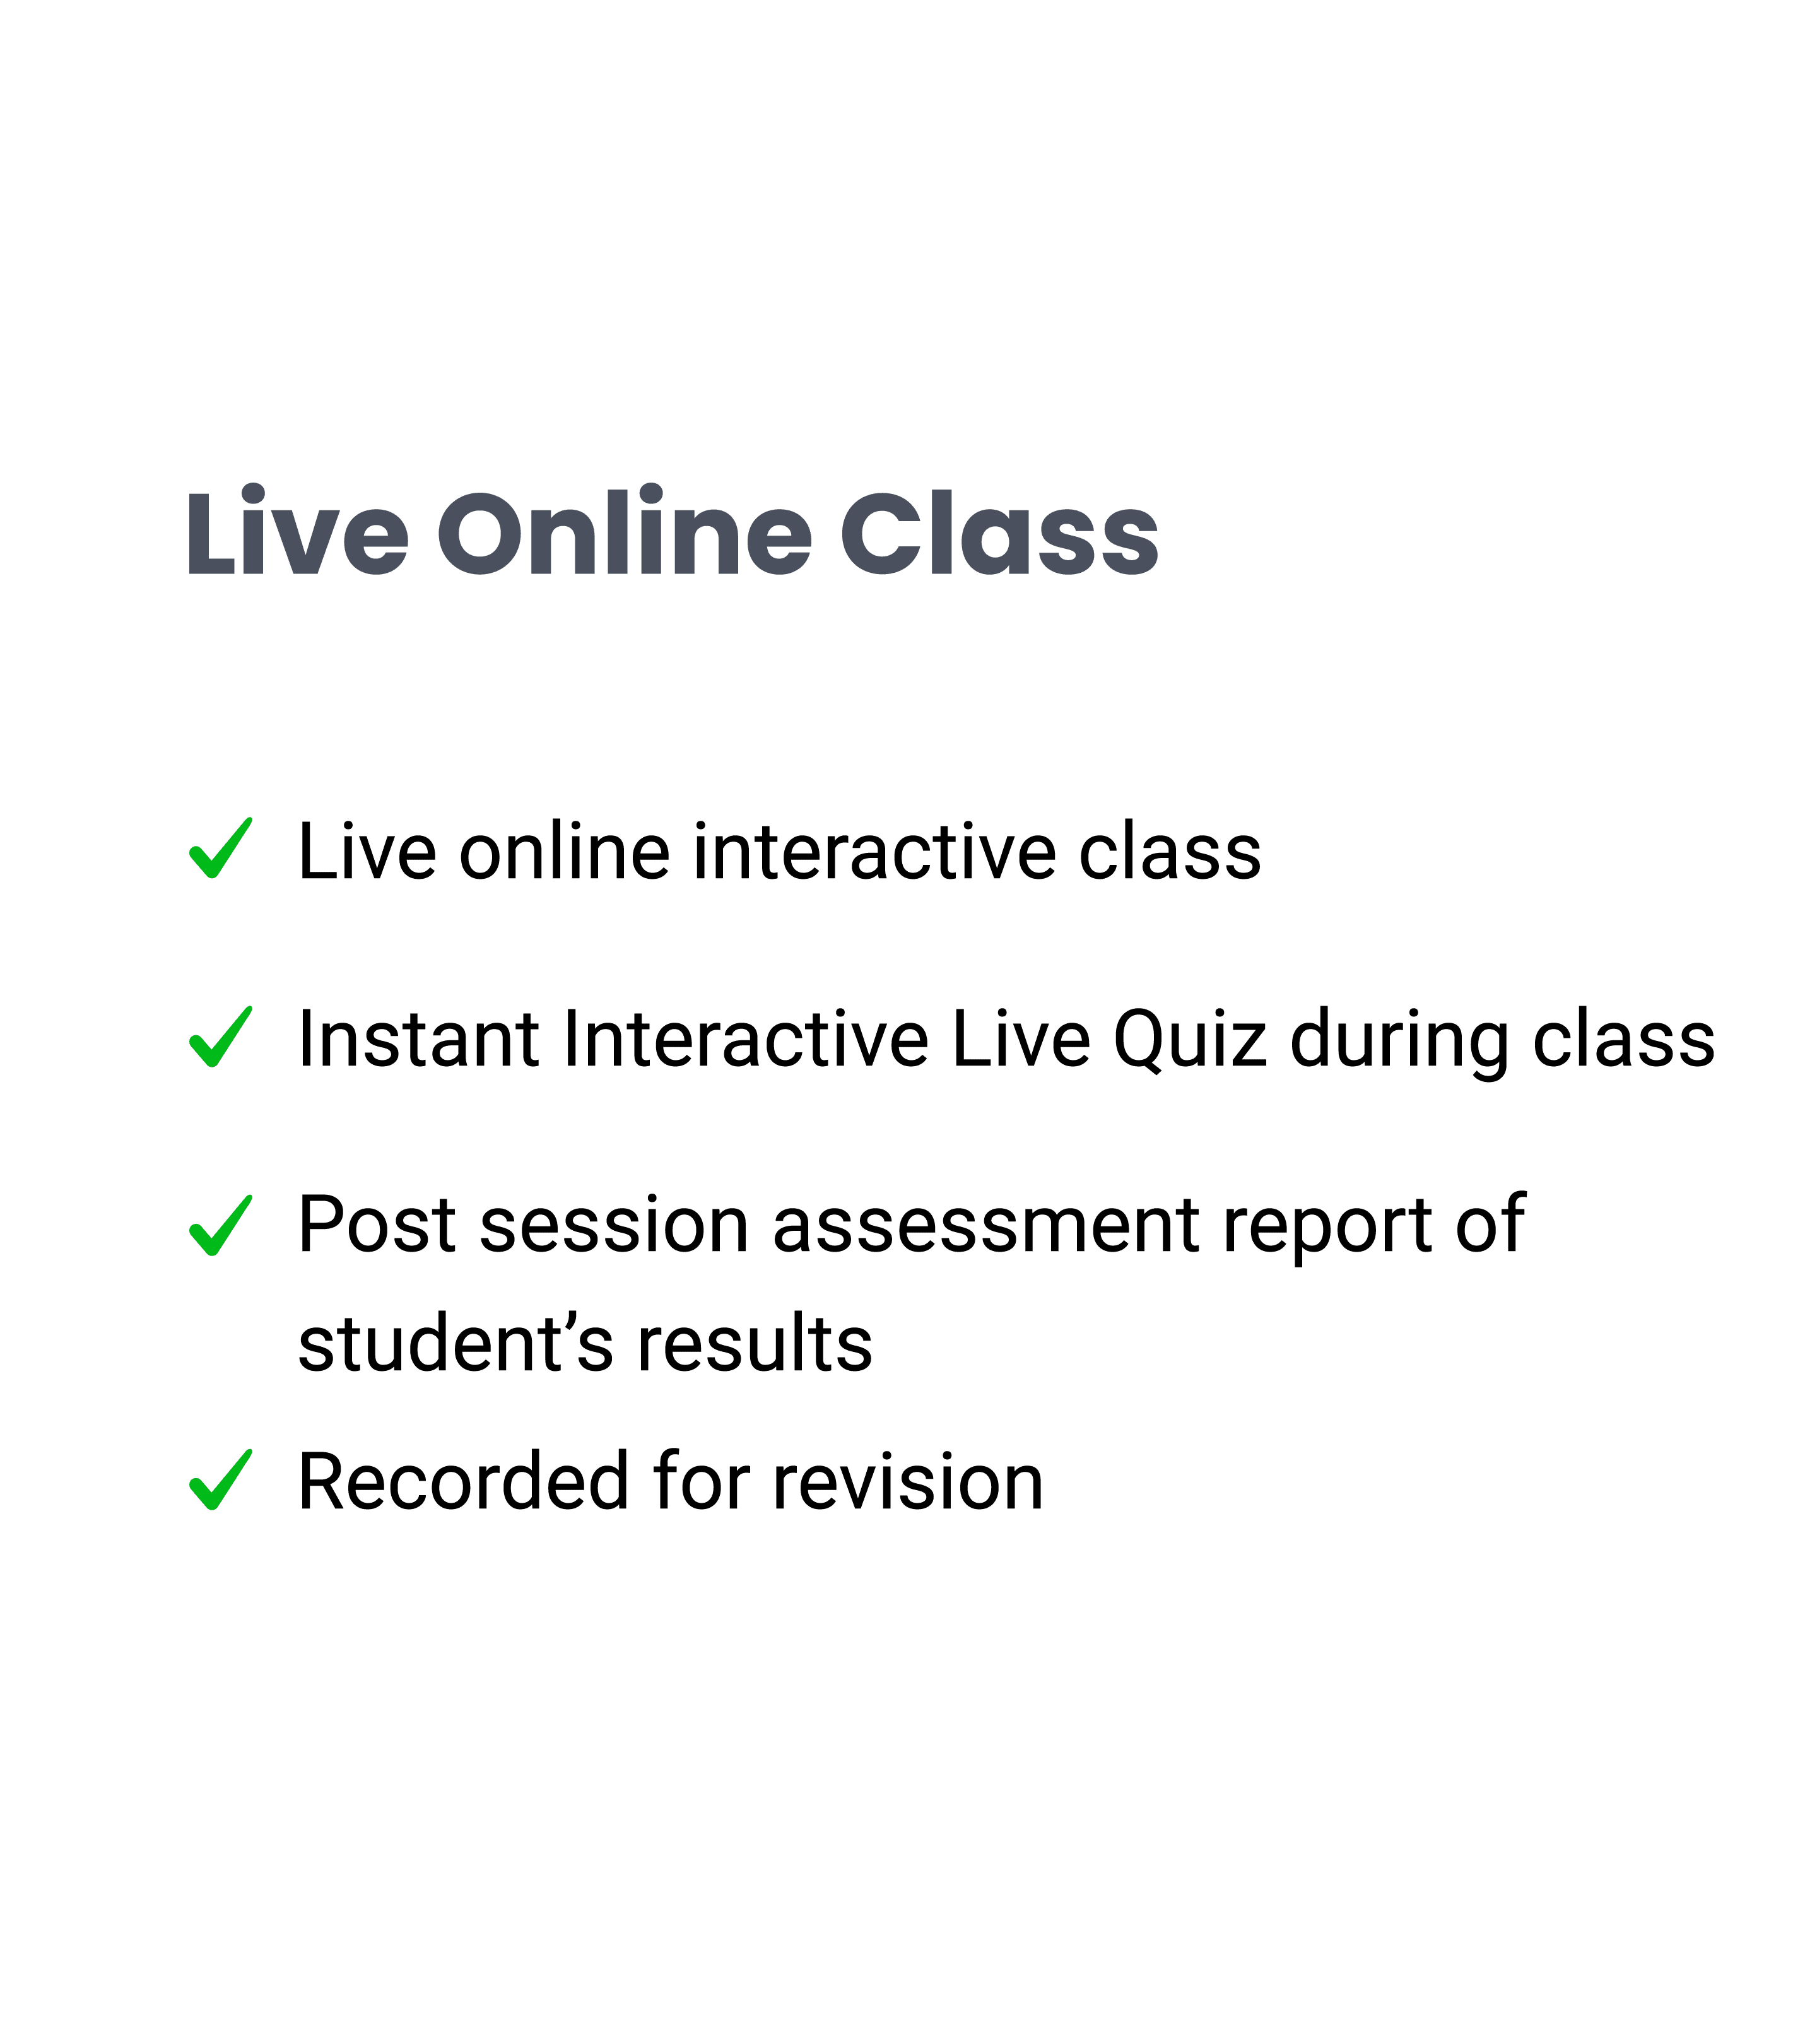 Live online classes